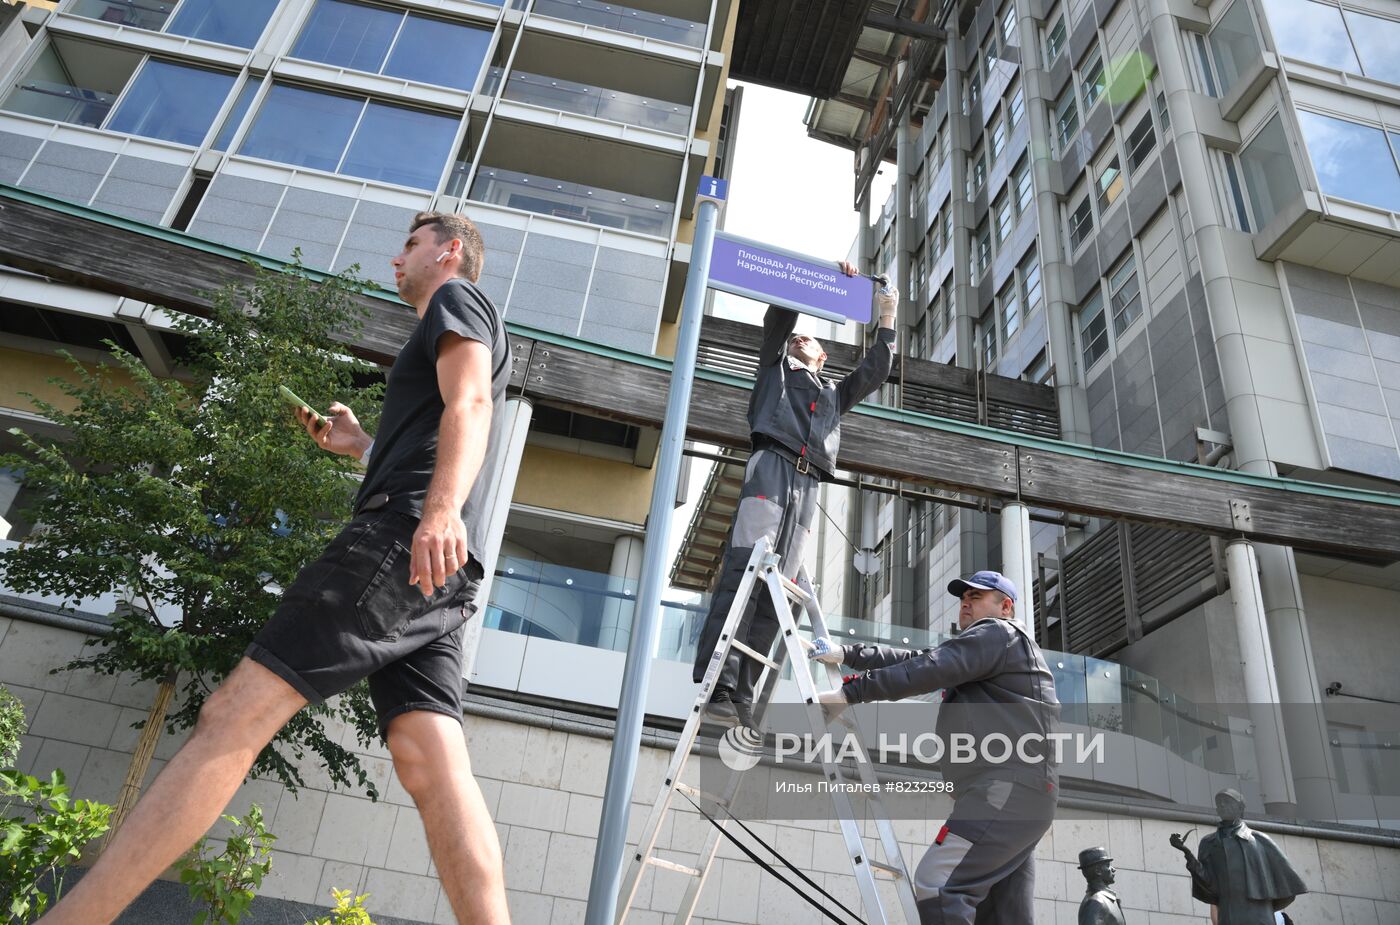 В Москве установили указатели на площадь ЛНР